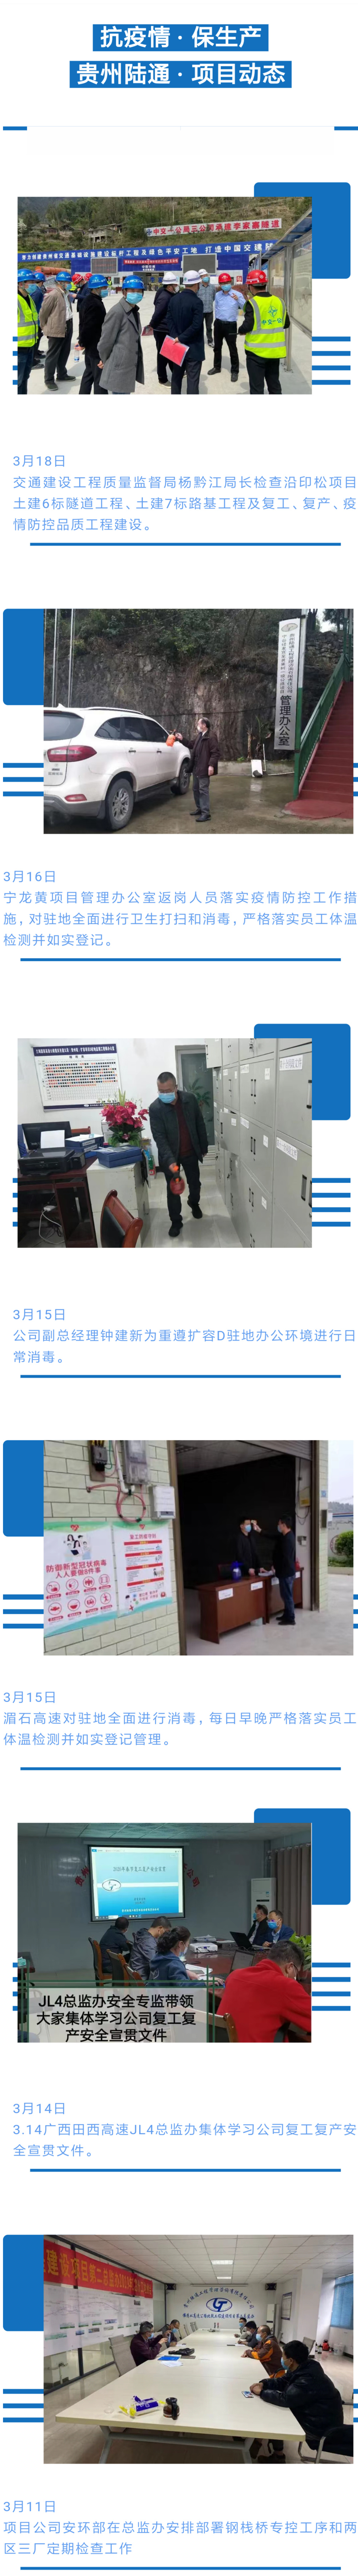 Screenshot_2020-03-19-14-29-16-373_com.tencent.mm_副本